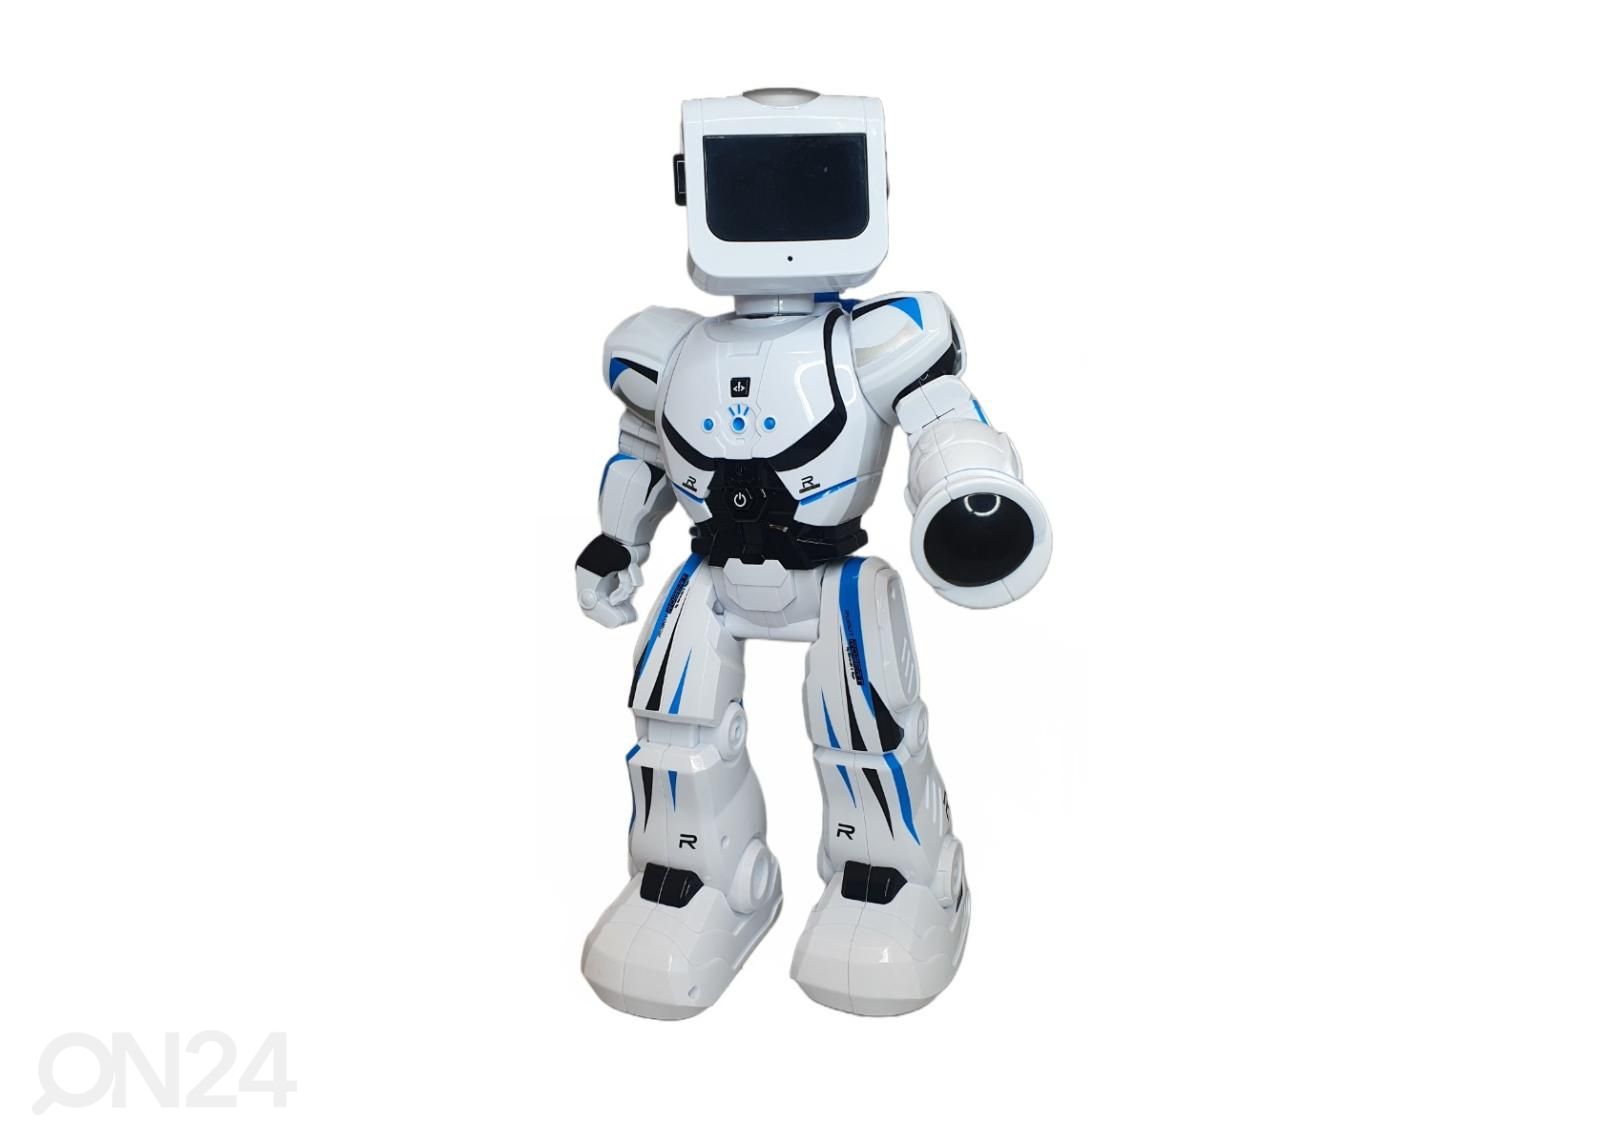 Gerardo's Toys englannin kielinen kauko-ohjattava robotti Robert kuvasuurennos